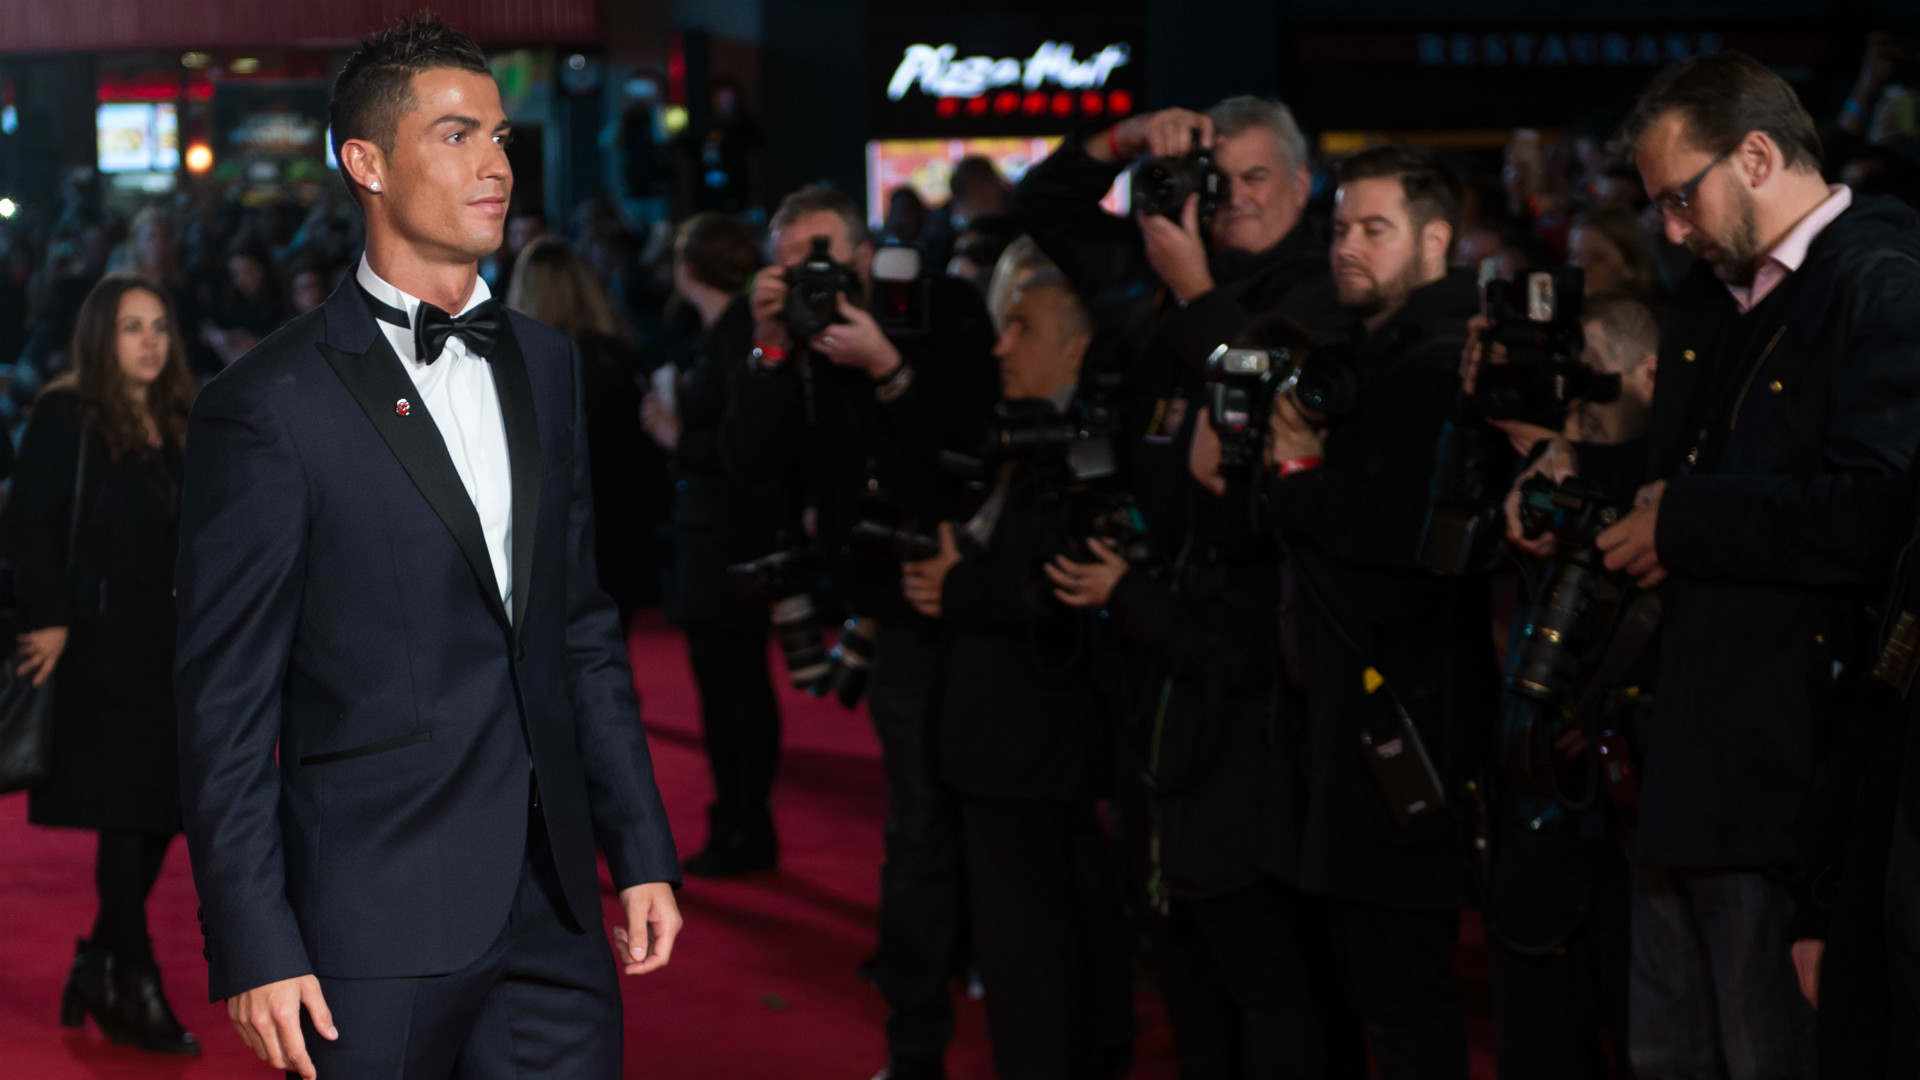 Cristiano Ronaldo movie premiere